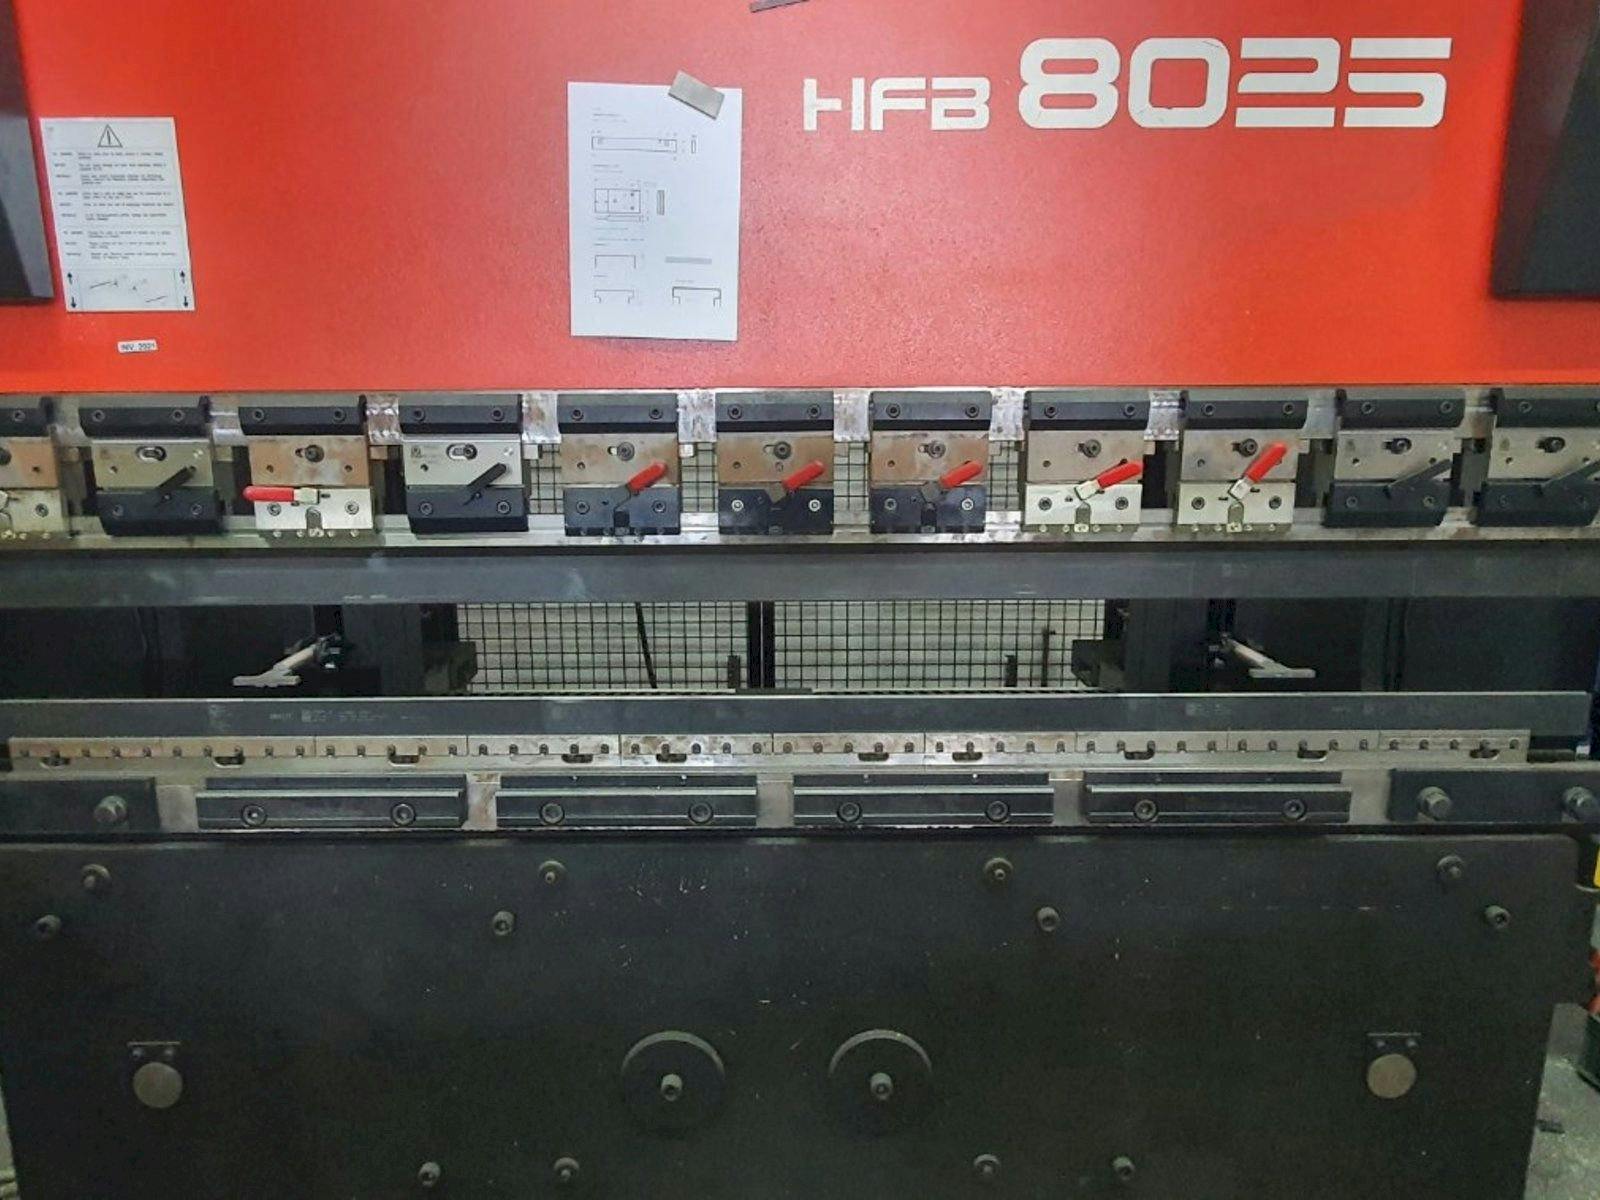 Vista Frontal  da AMADA HFBO 80-25  máquina